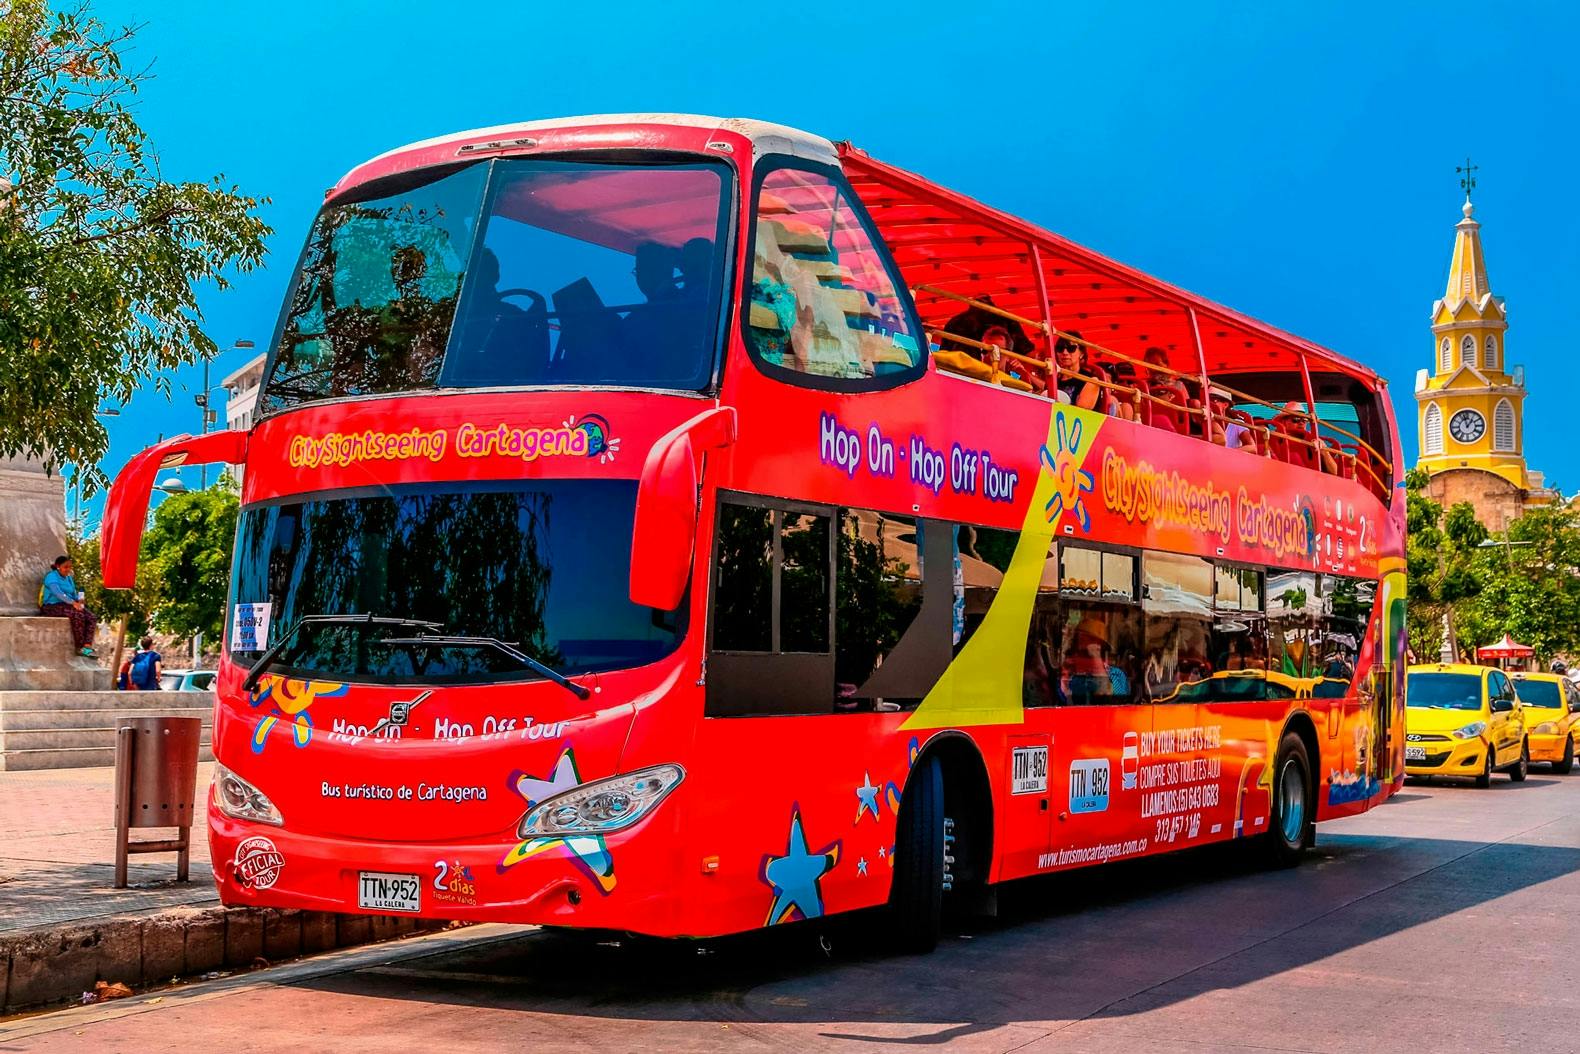 Excursão turística em ônibus panorâmico pela cidade de Cartagena